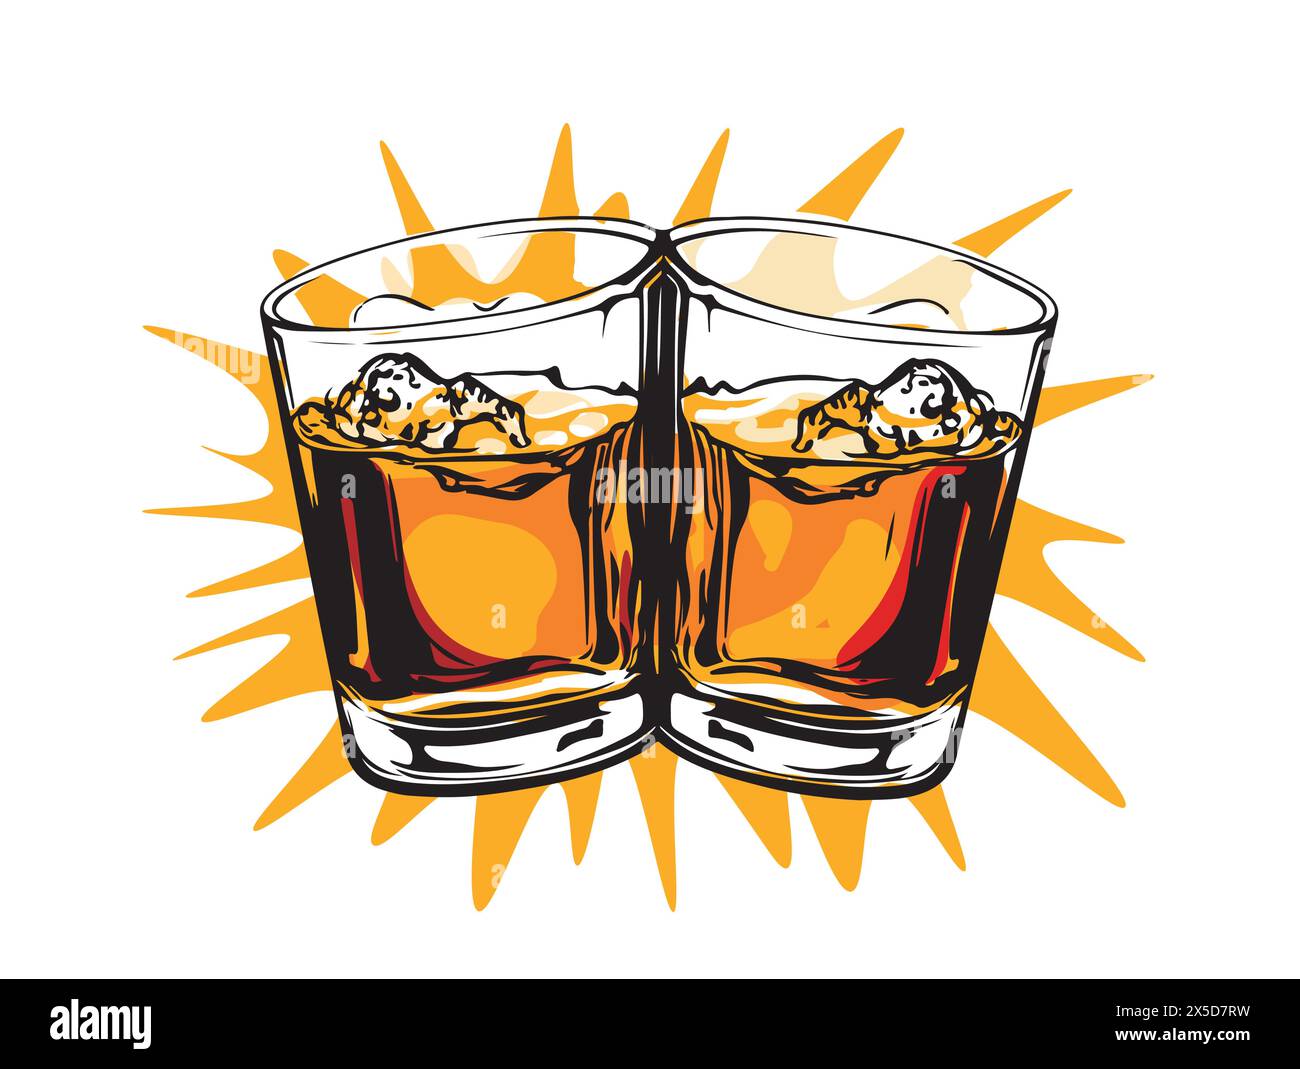 Bicchieri da cinturino insieme al whiskey. Stile disegnato a mano. Design di bevande alcoliche. Illustrazione vettoriale Illustrazione Vettoriale